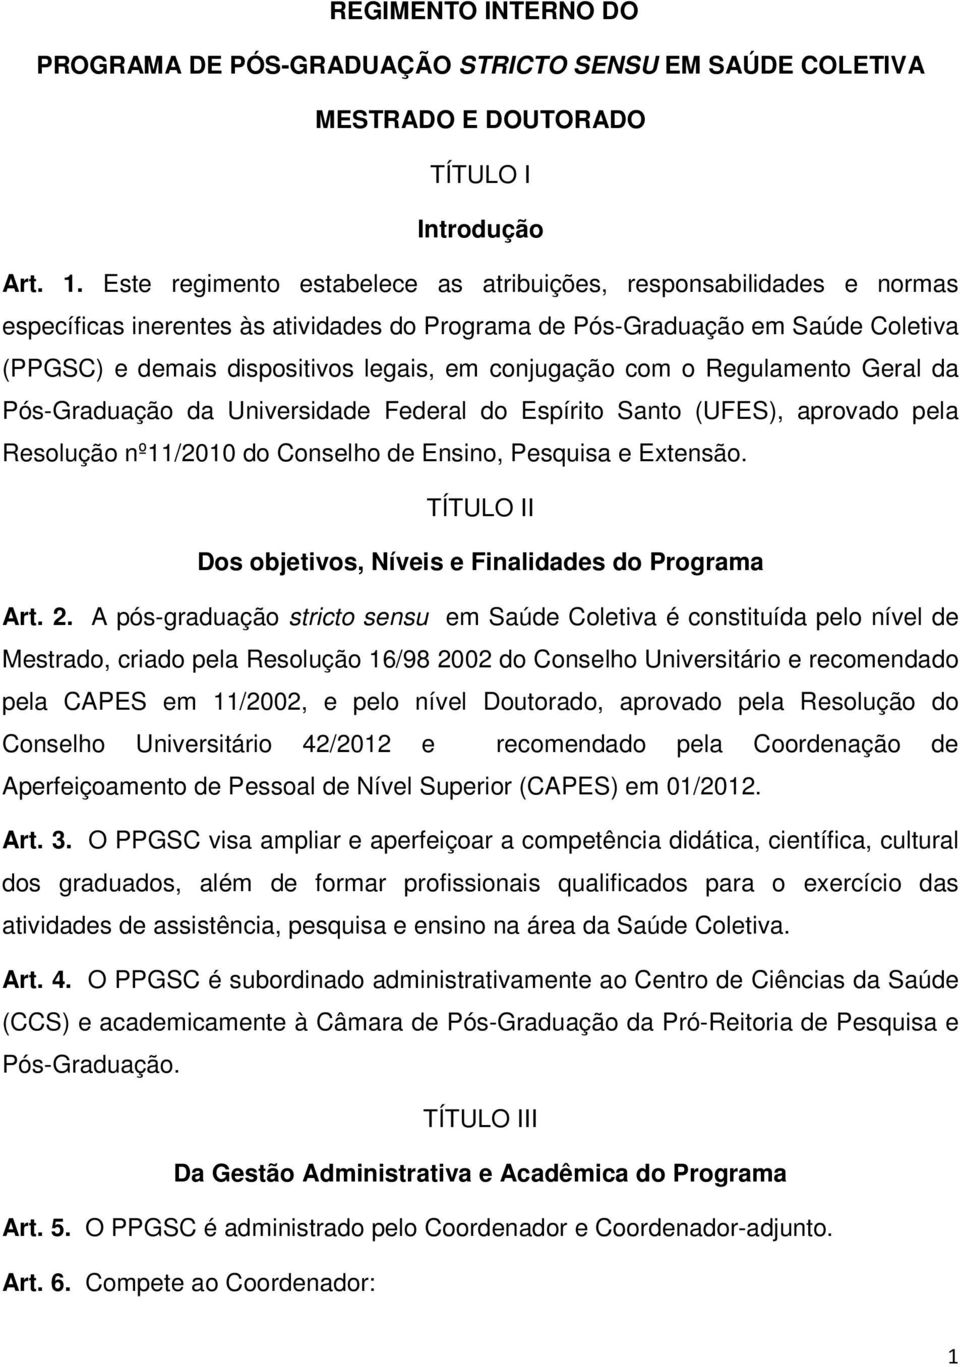 conjugação com o Regulamento Geral da Pós-Graduação da Universidade Federal do Espírito Santo (UFES), aprovado pela Resolução nº11/2010 do Conselho de Ensino, Pesquisa e Extensão.